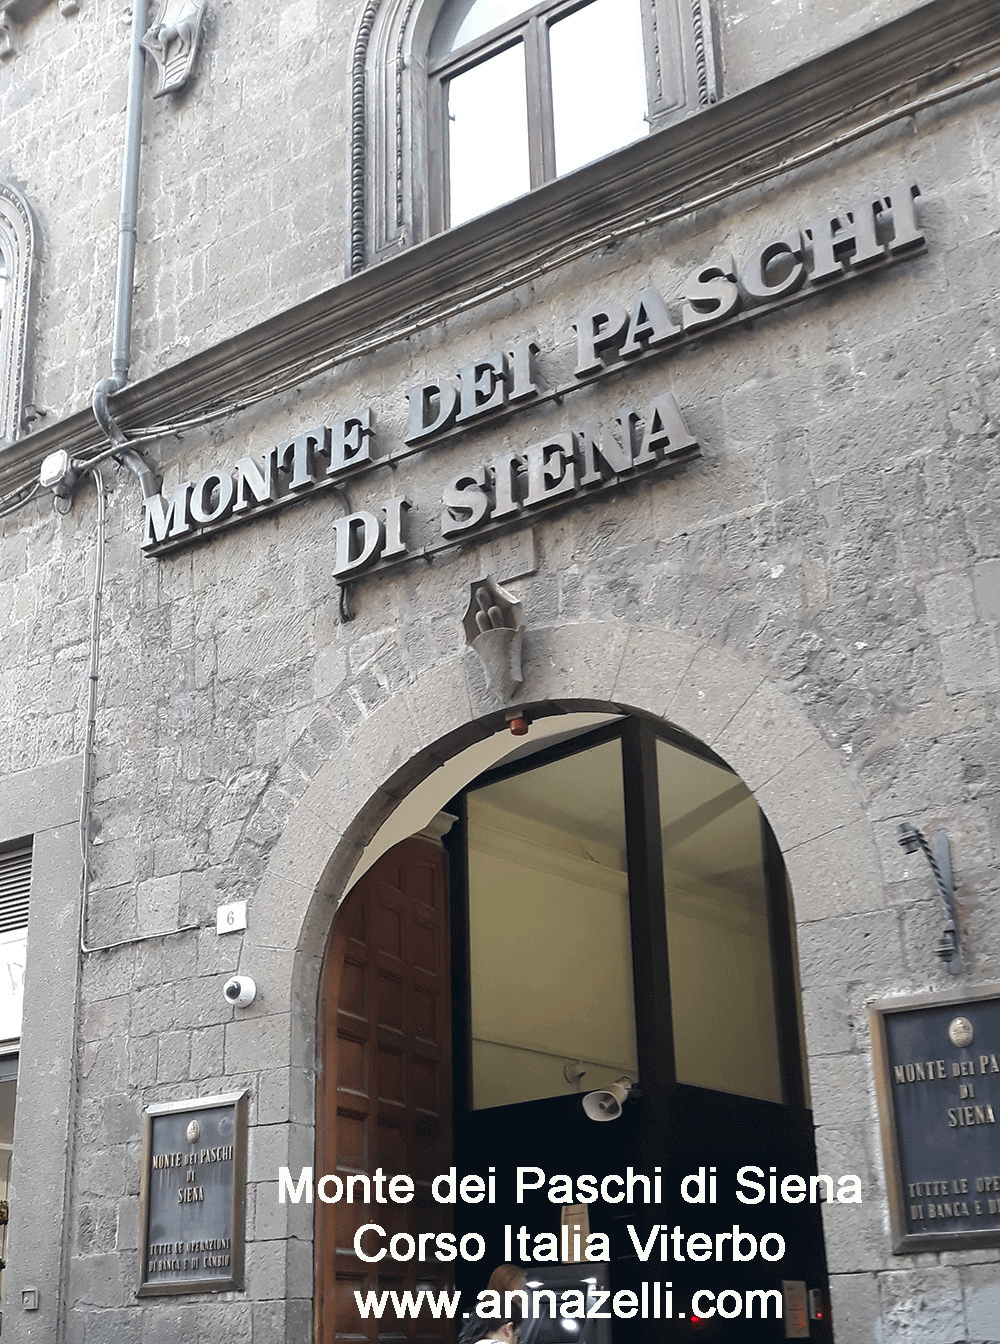 palazzo Gatti Monte dei Paschi di Siena affaccio piazza delle erbe e corso italia viterbo info e foto anna zelli